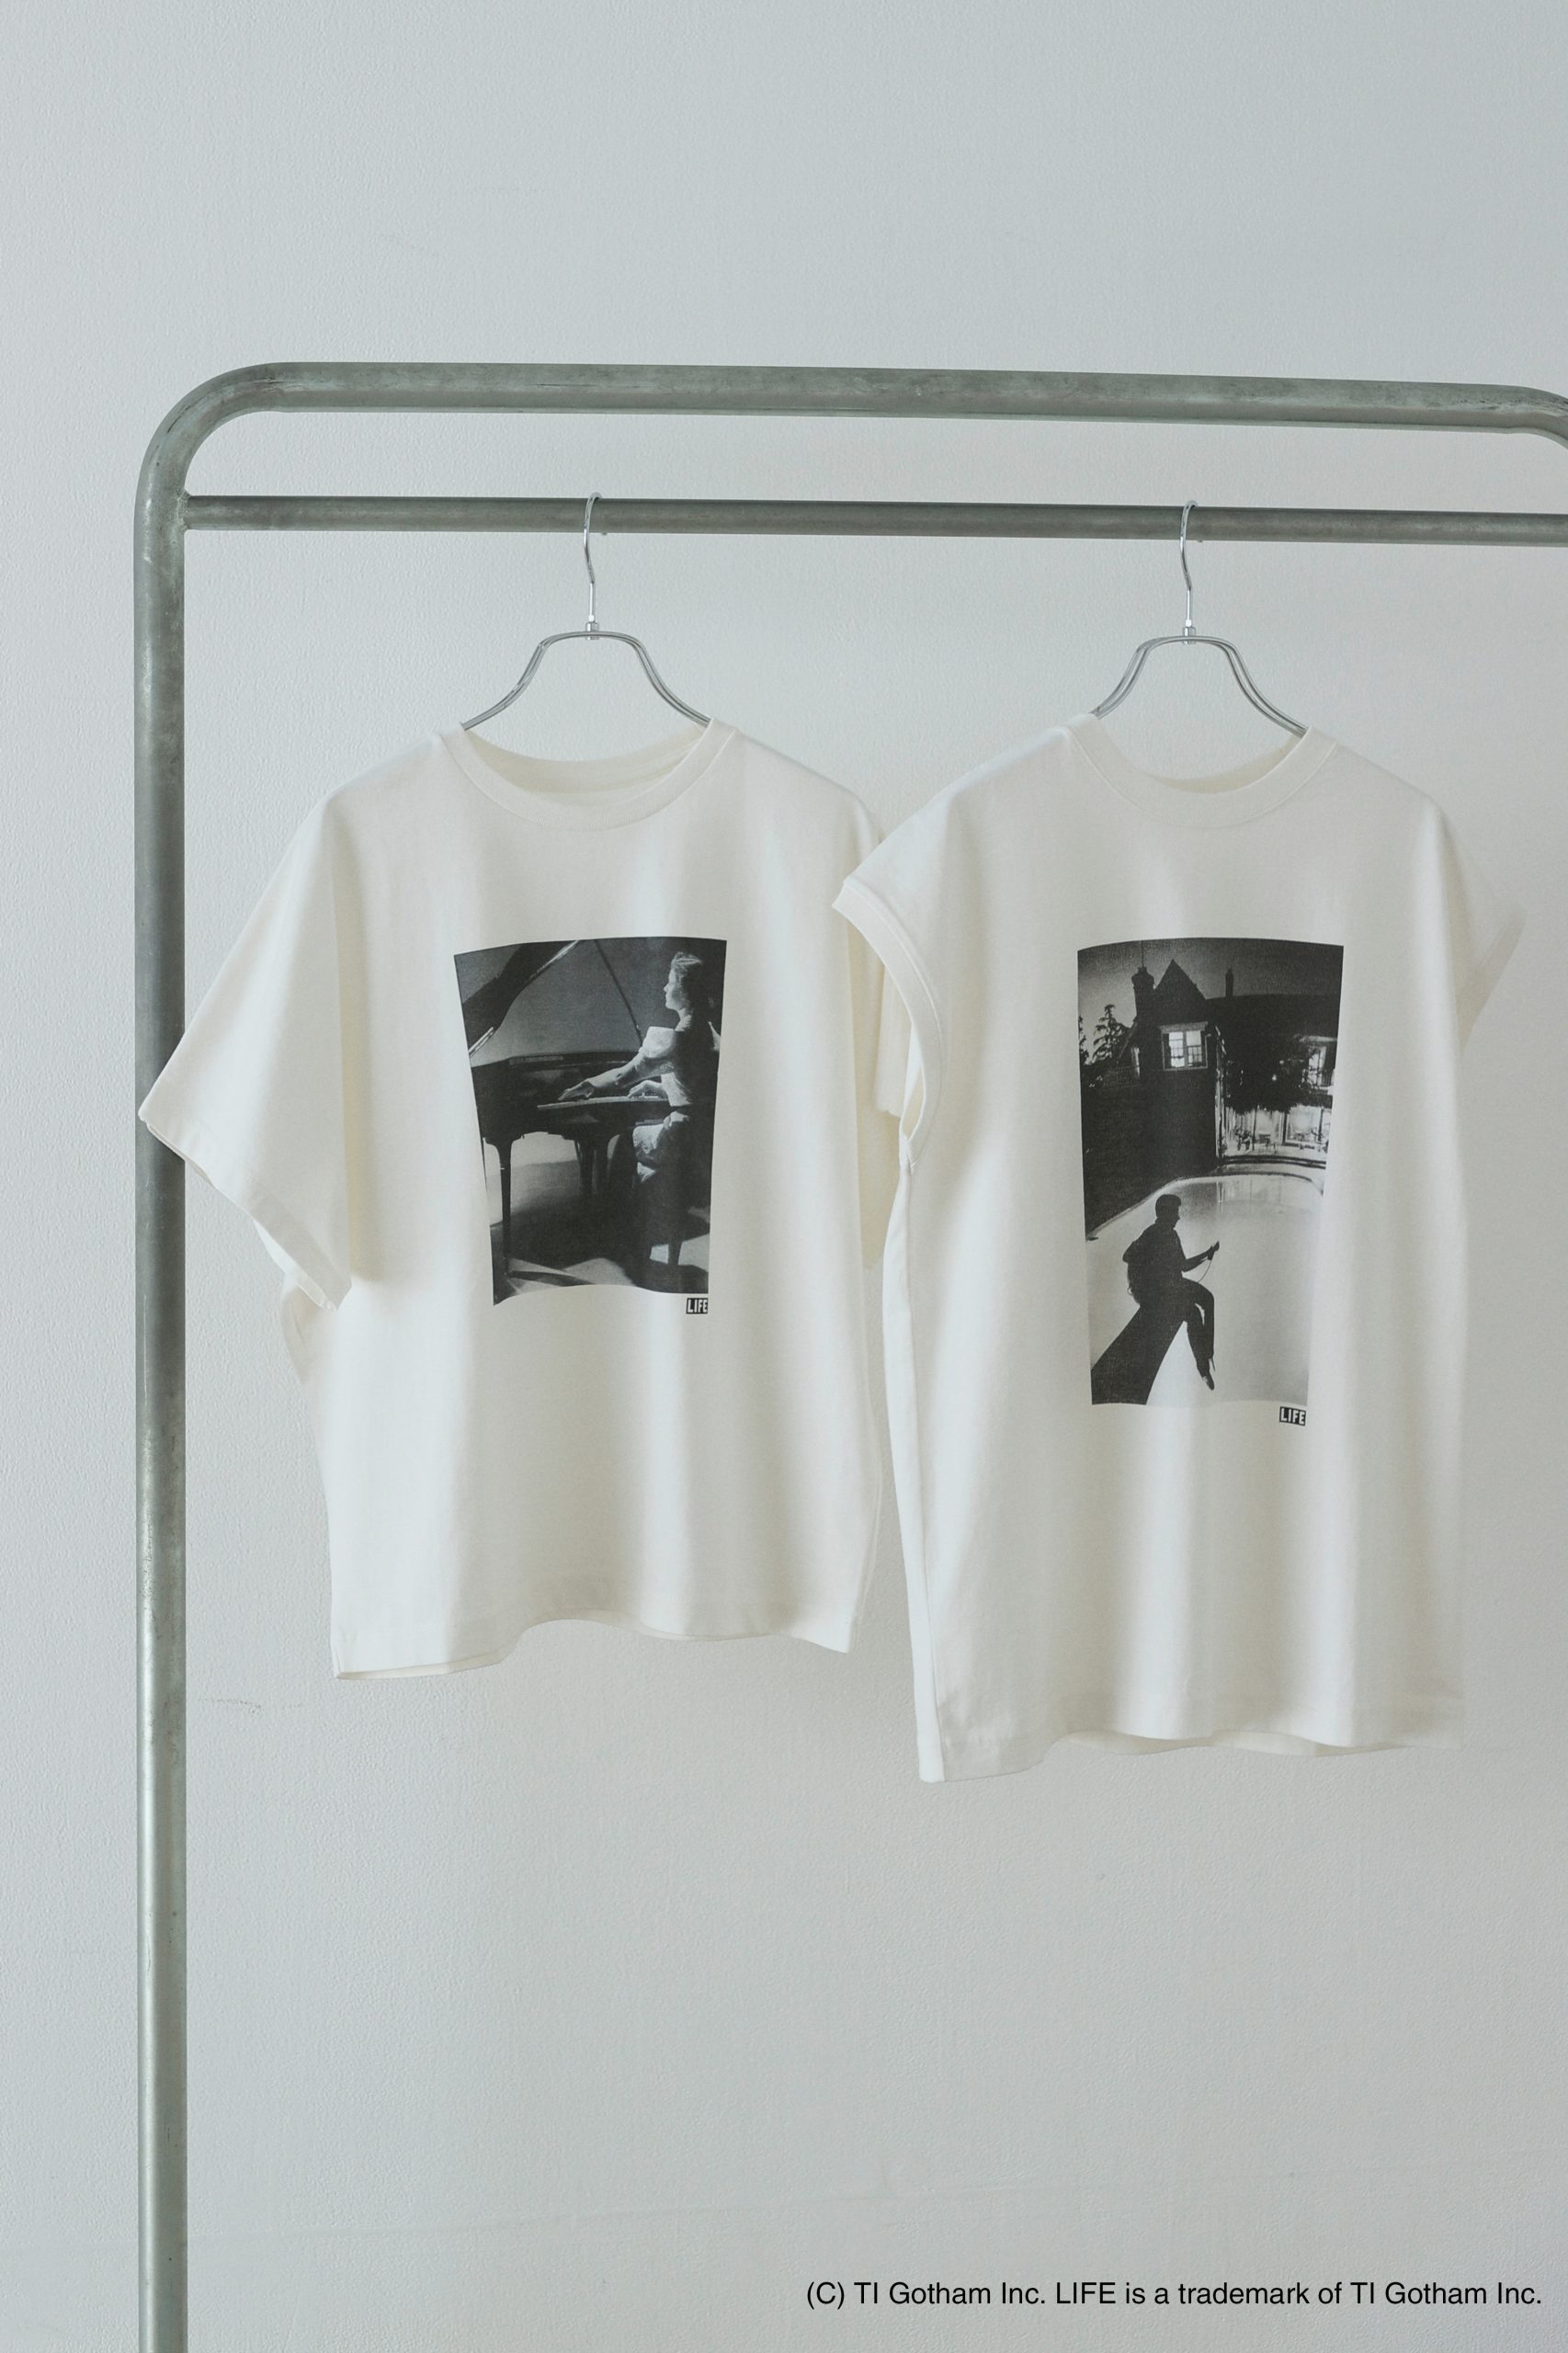 suadeoの新作到着！初夏に着映える「ワンピースとTシャツ」